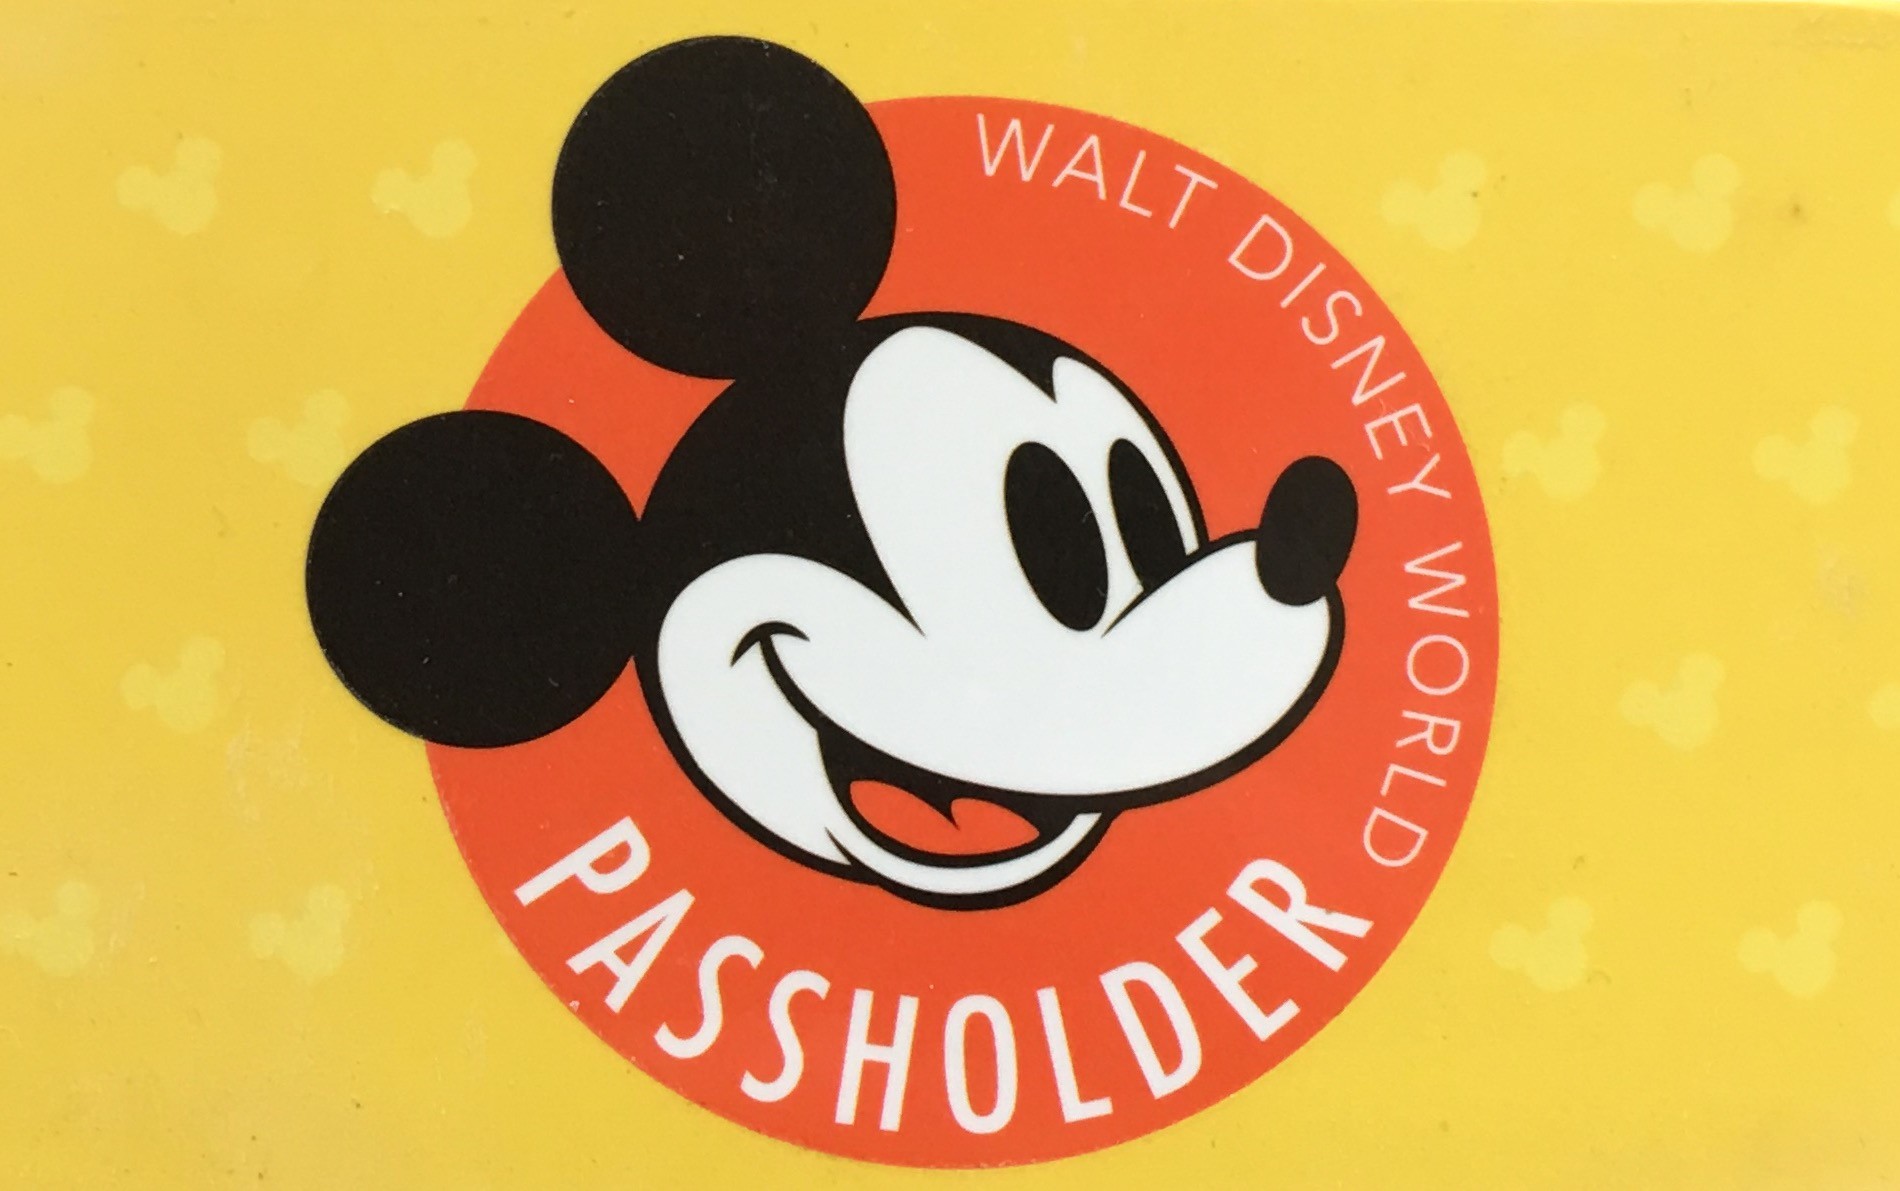 Annual Passholder Summer Promotion For Walt Disney World Announced